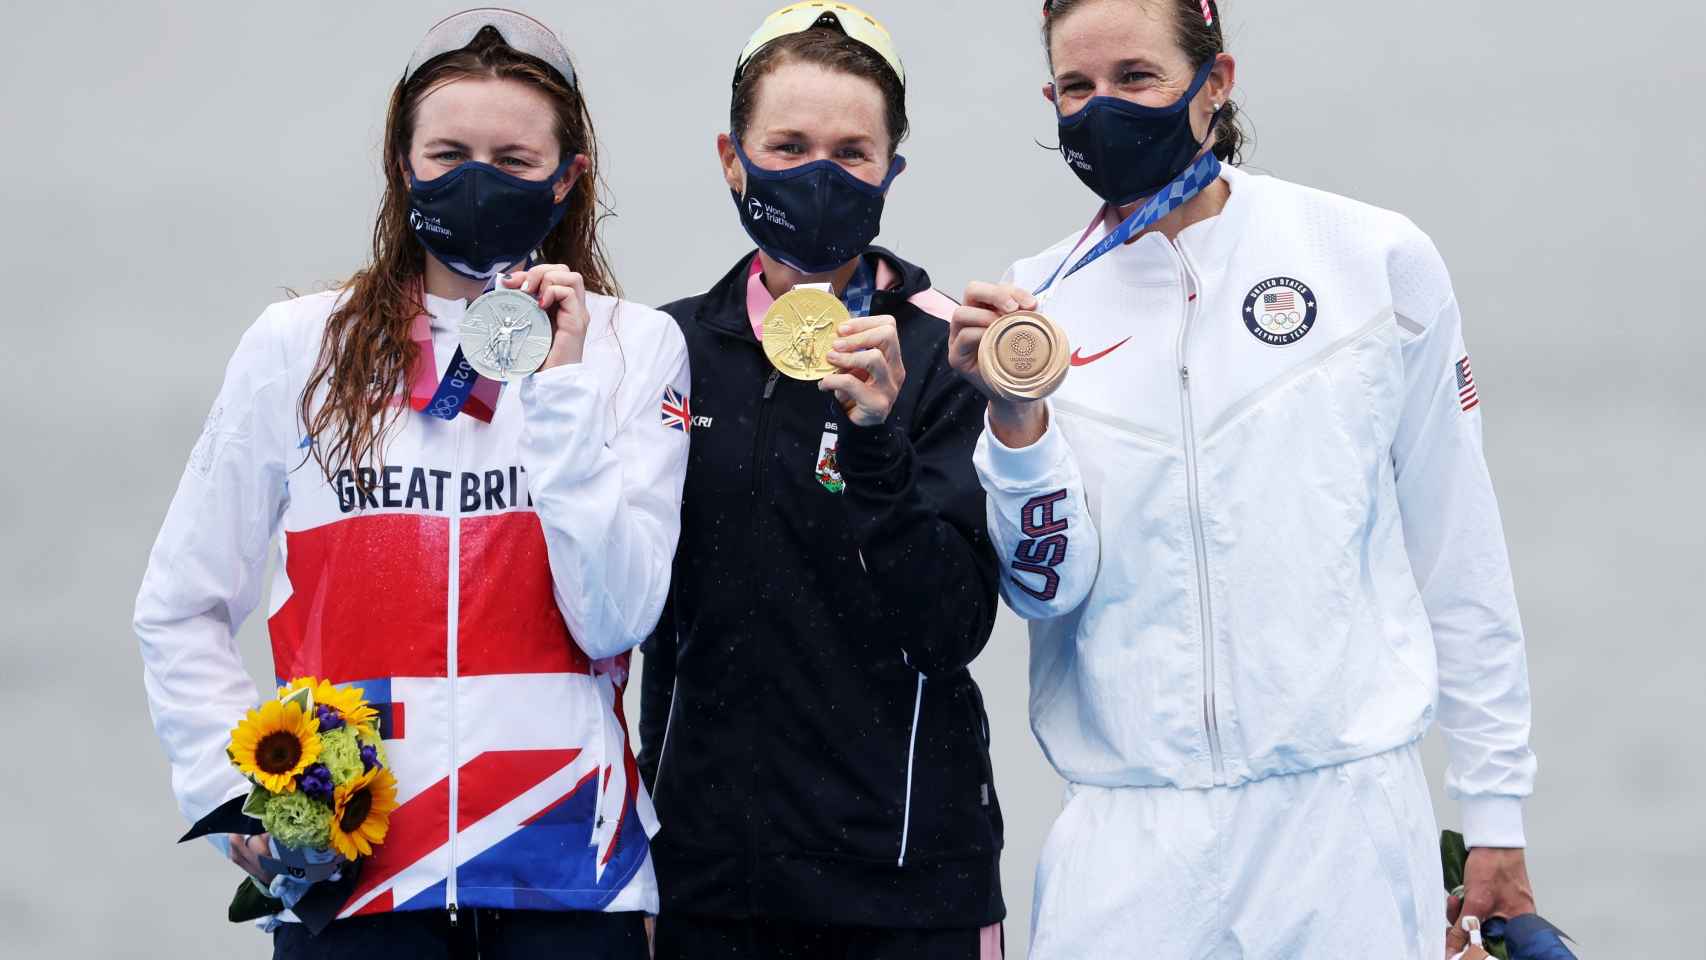 Flora Duffy, Taylor-Brown y Zaferes en el podio de la prueba de triatlón de los JJOO de Tokio 2020